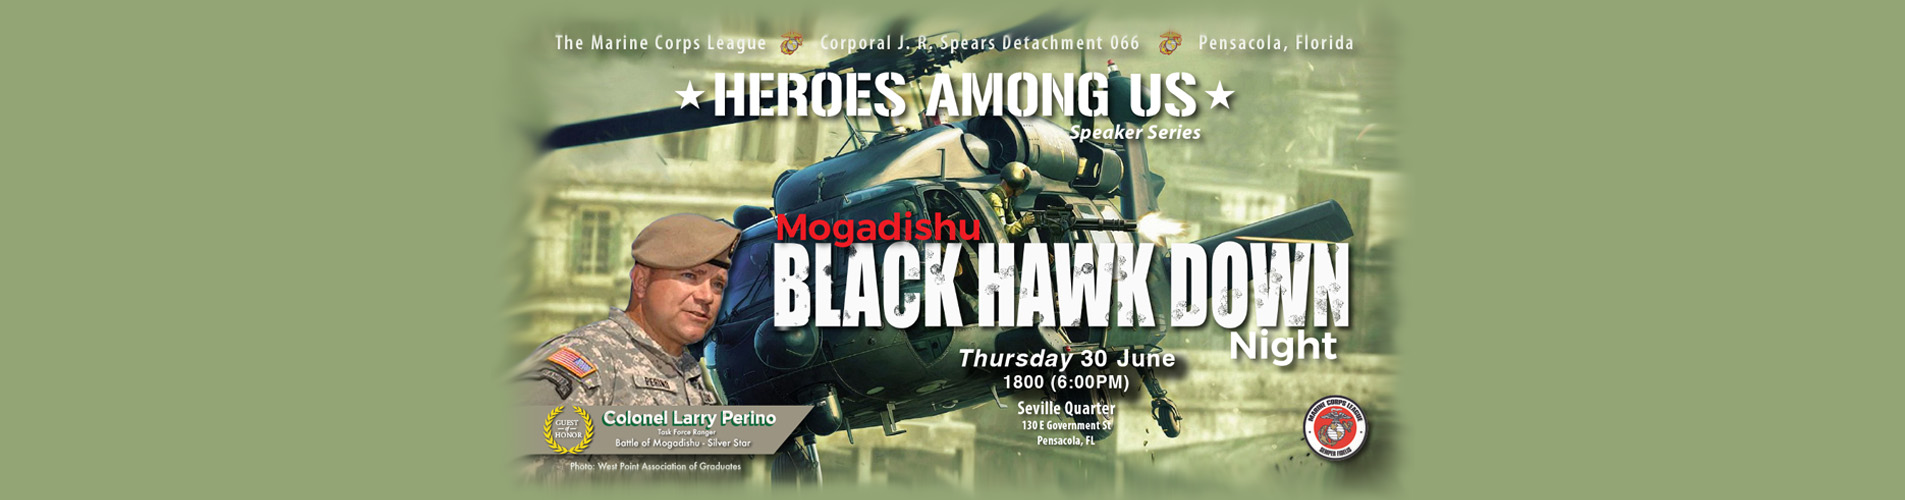 Blackhawk Down Event - Colonel Larry Perino, US Army 